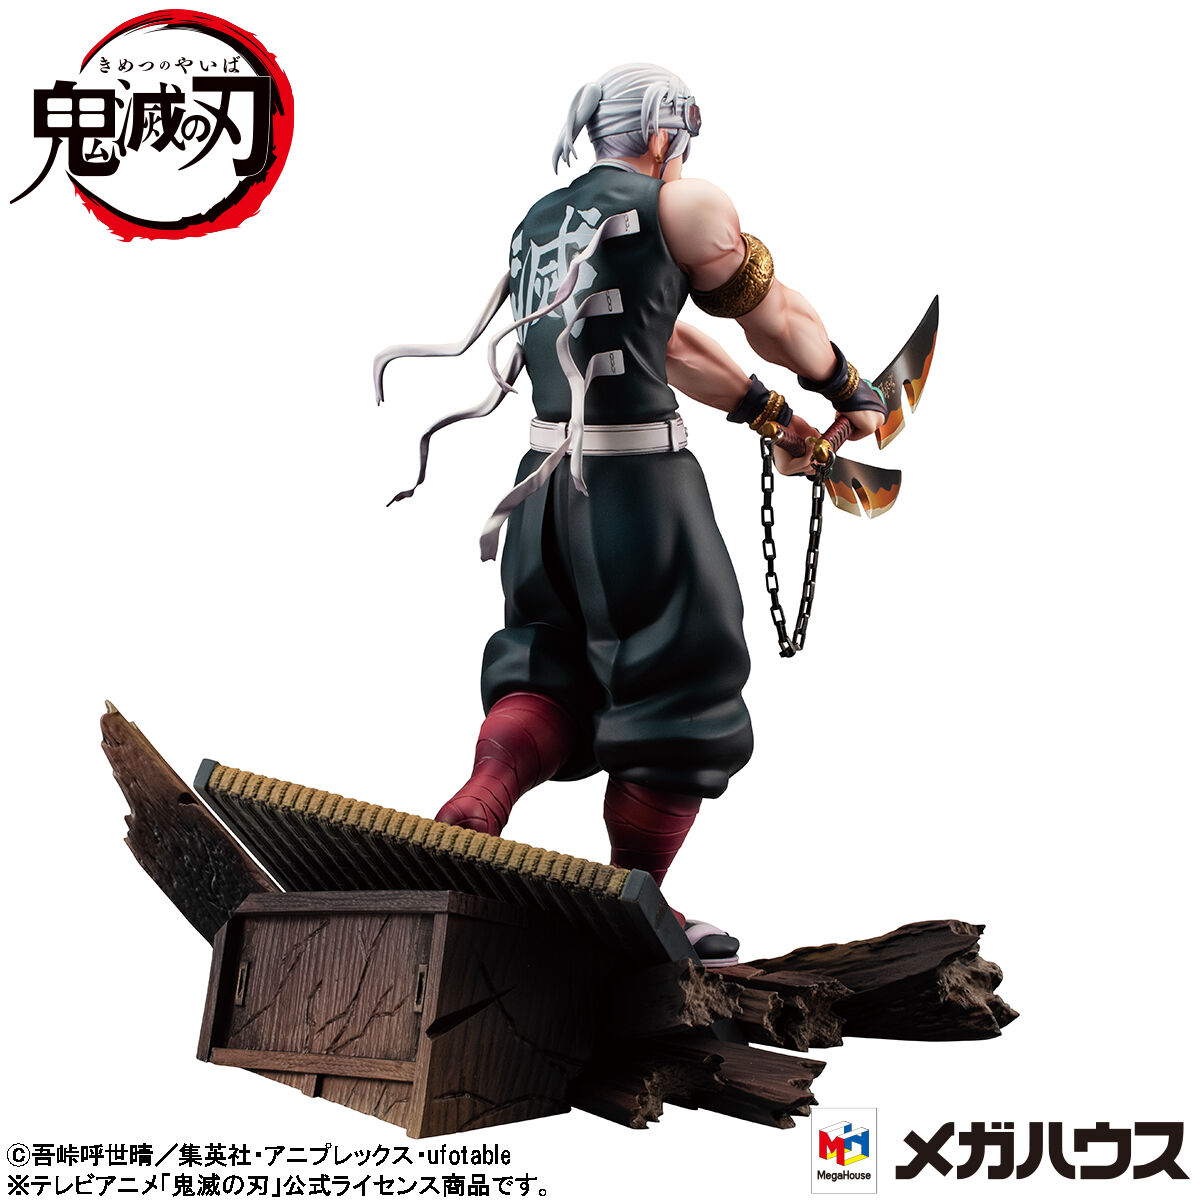 Tengen Uzui The Sound Hashira Demon Slayer Kimetsu no Yaiba Figure Figuarts ZERO BANDAI